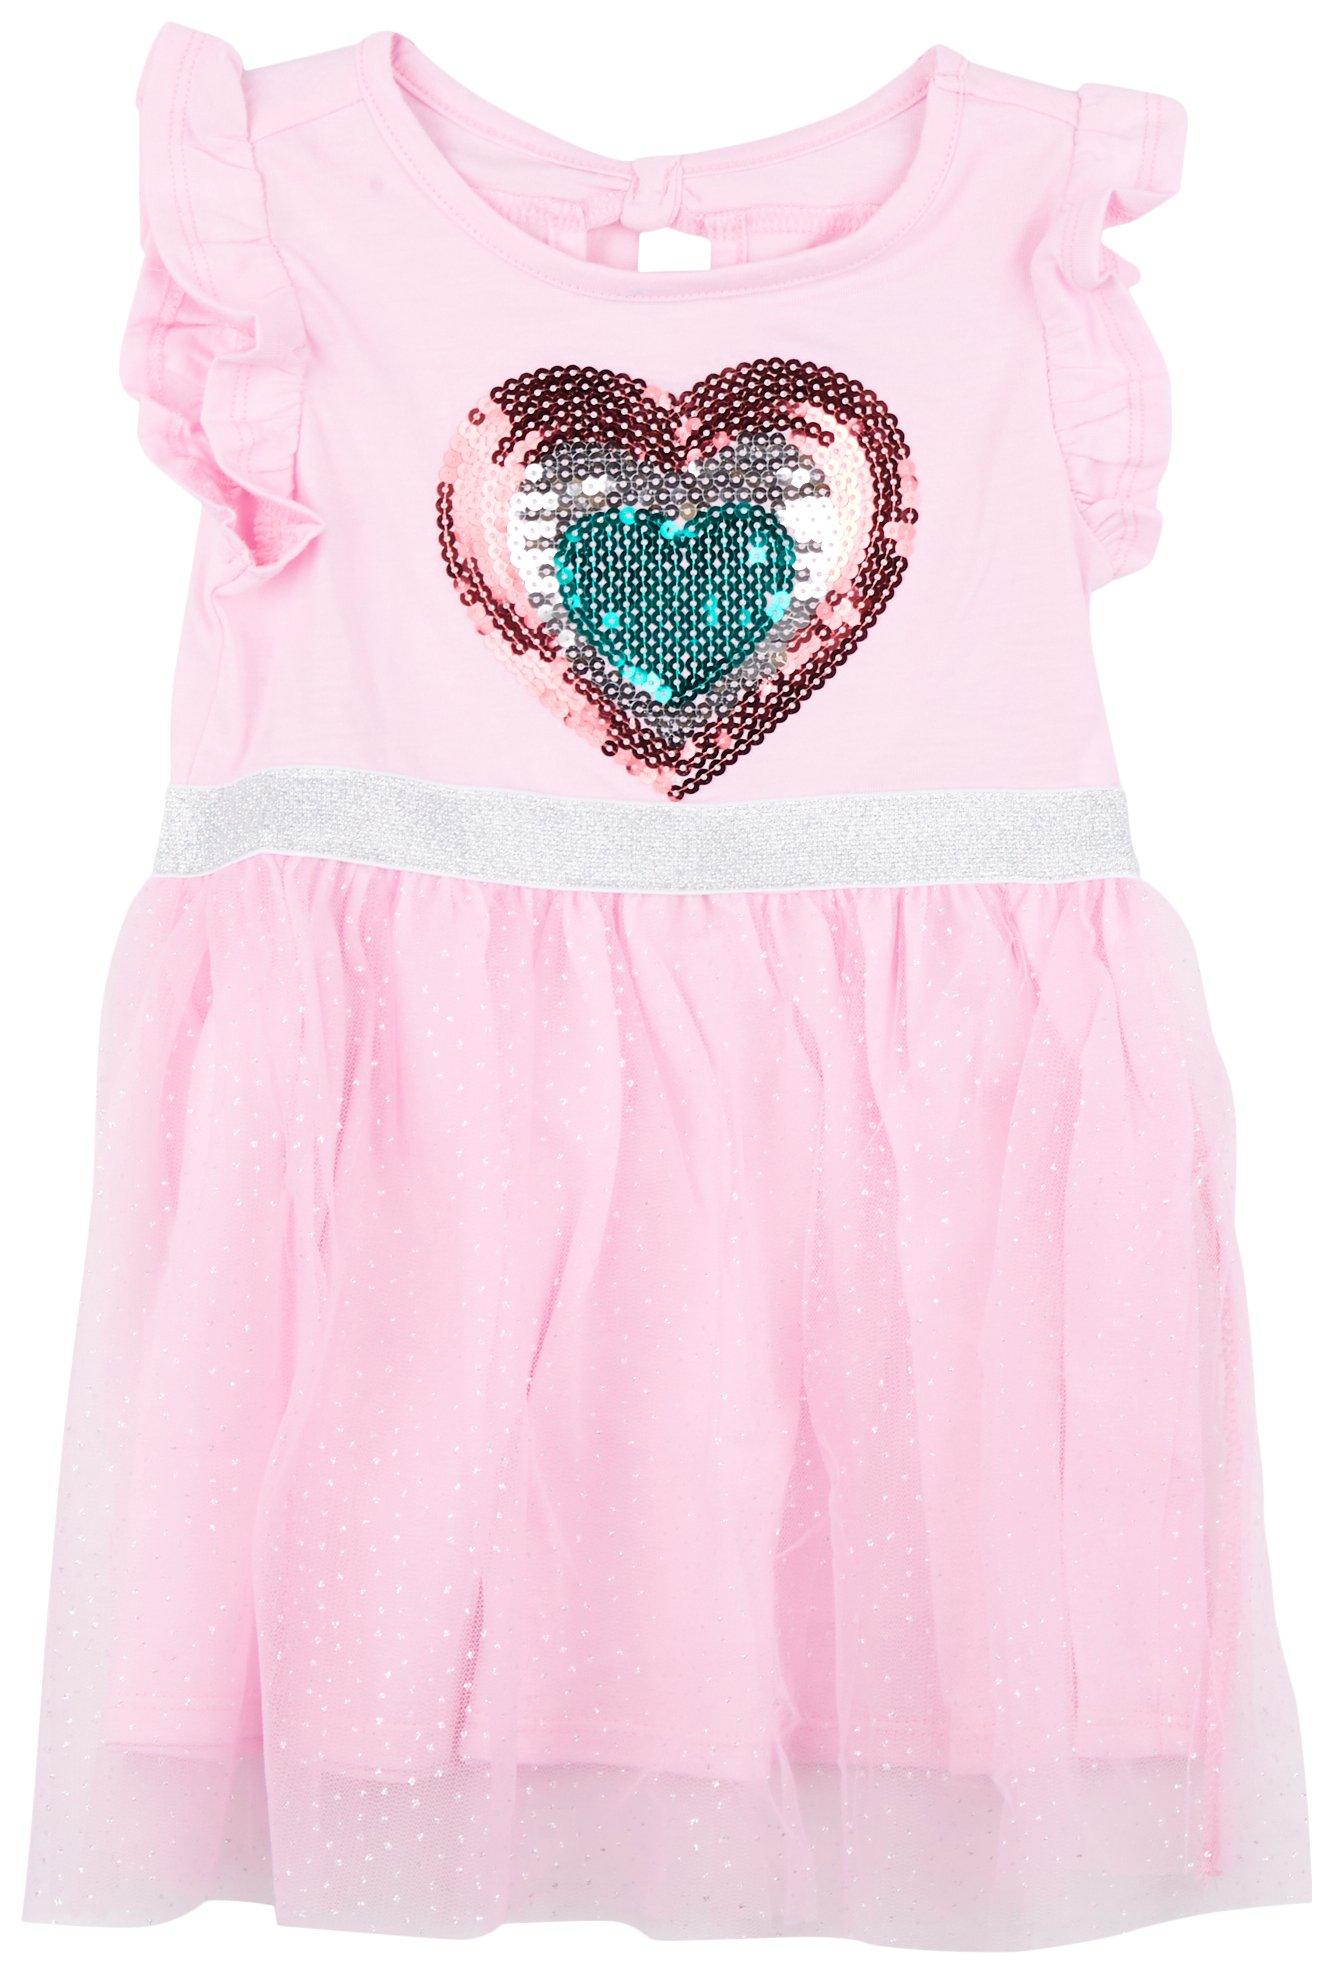 DOT & ZAZZ Toddler Girls Heart Sequin Flutter